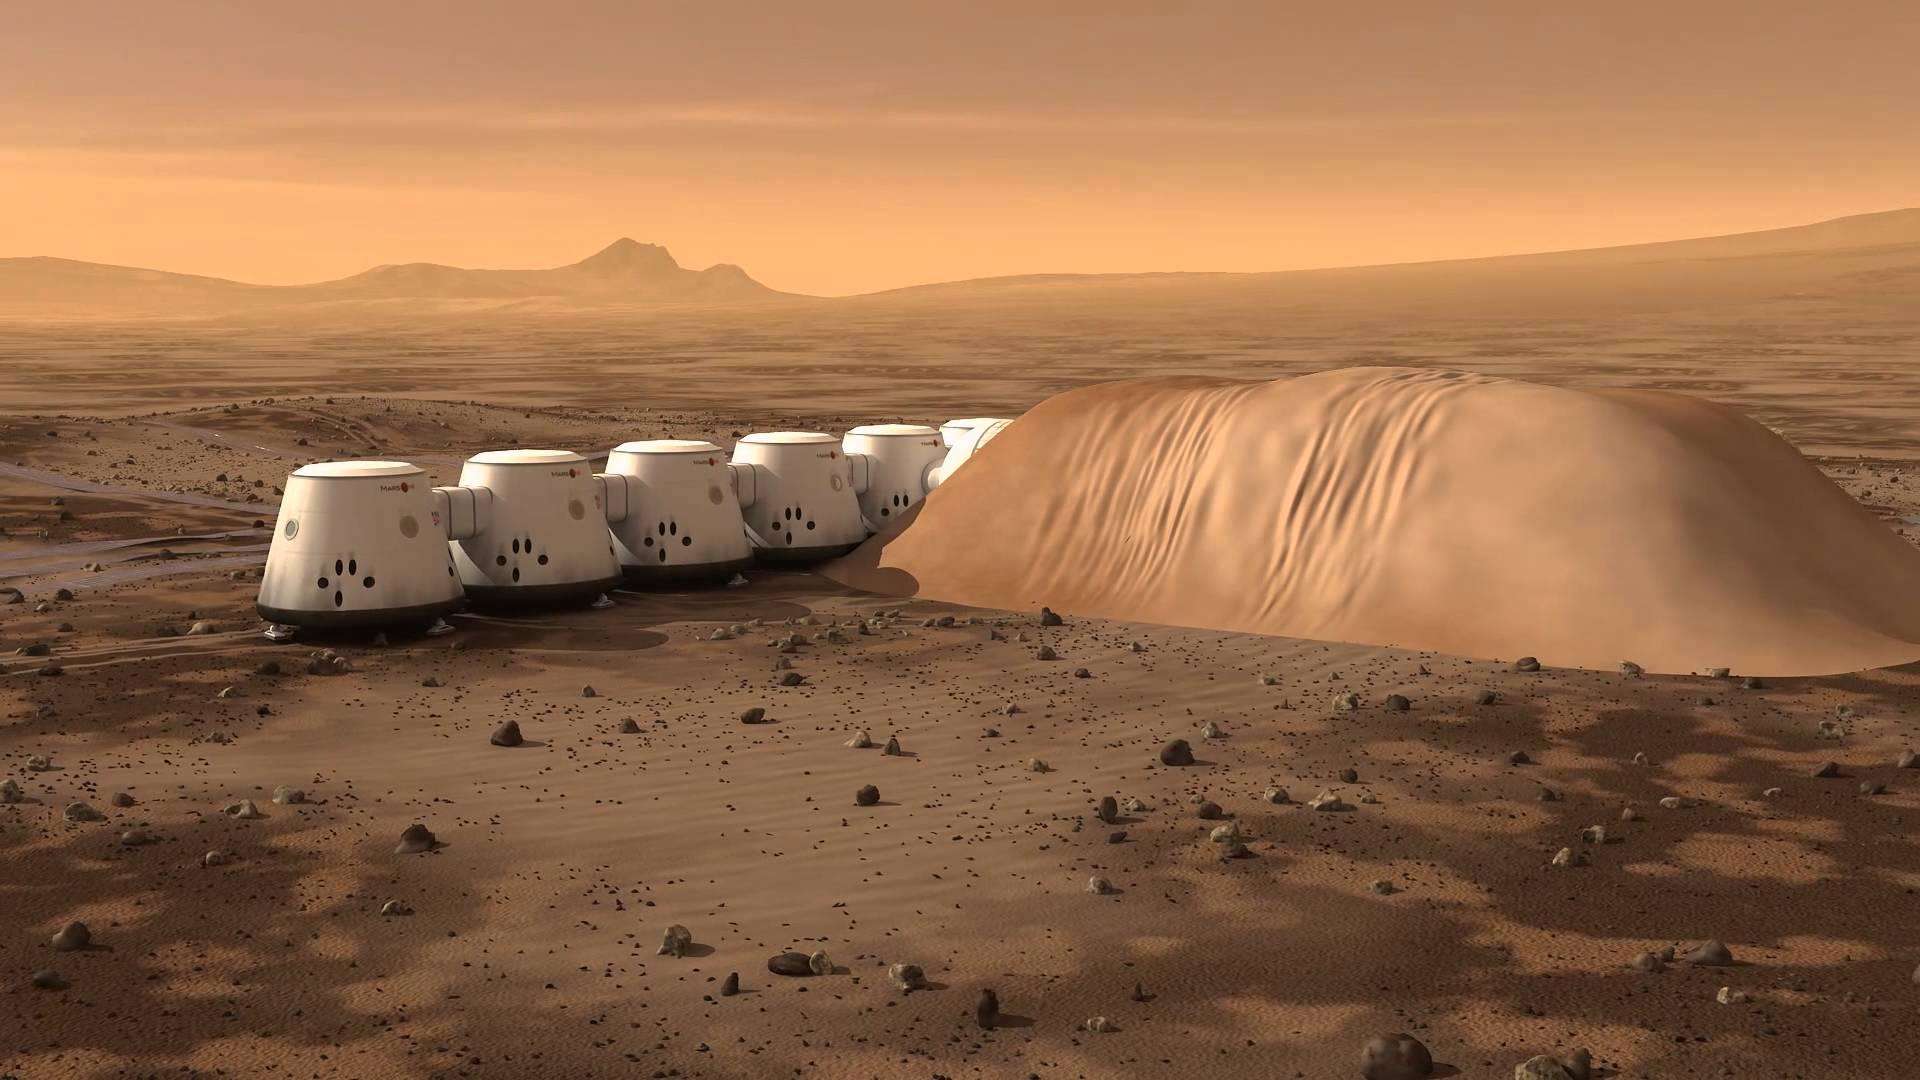 क्या मंगल पर भी आते हैं भूकम्प के झटके इनकी जाँच कर रहा है नासा